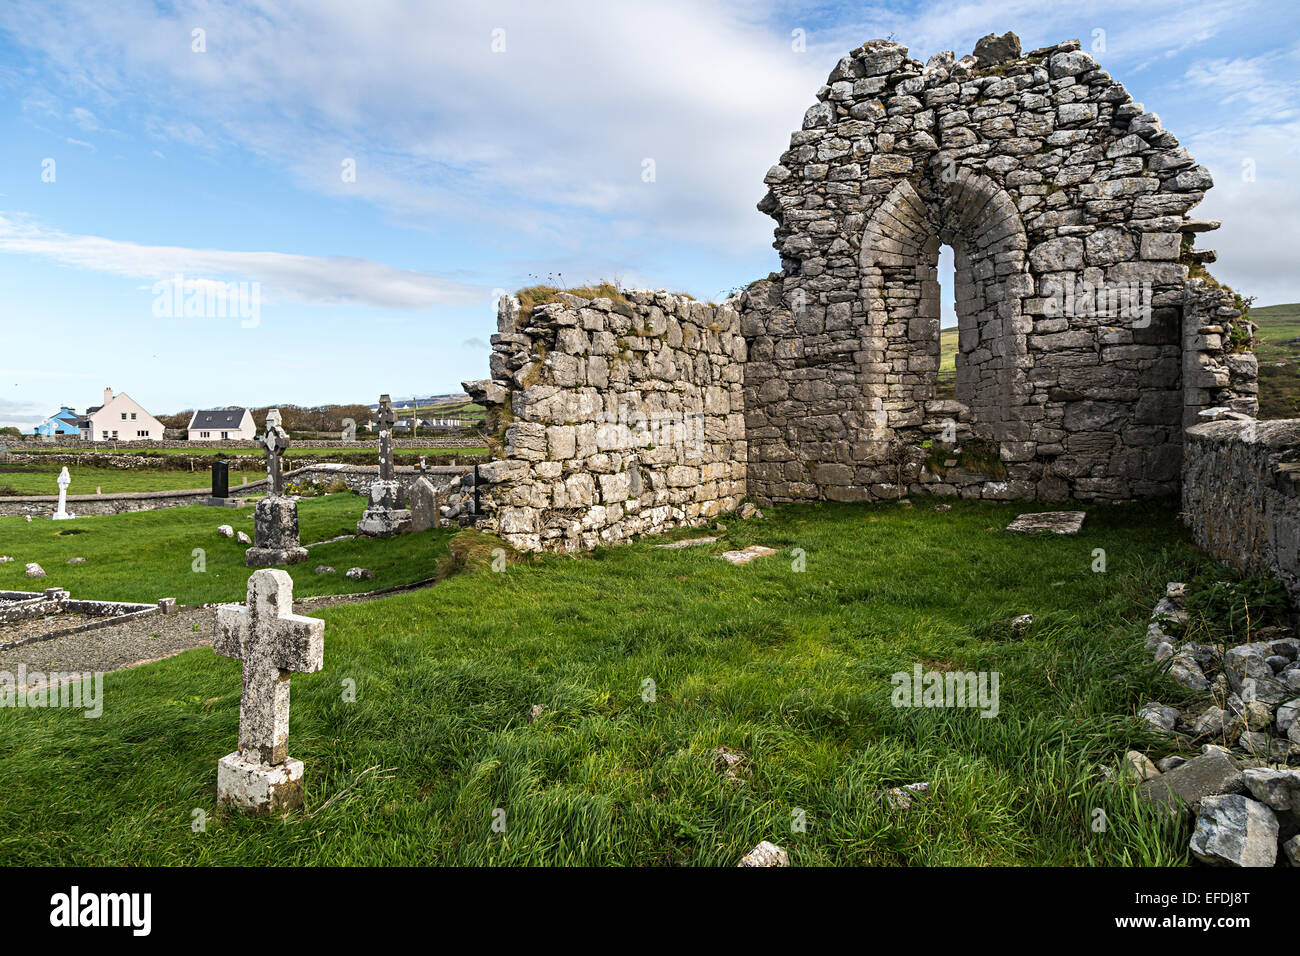 Iglesia en ruinas, Killonaghan Fanore, Clare, República de Irlanda Foto de stock